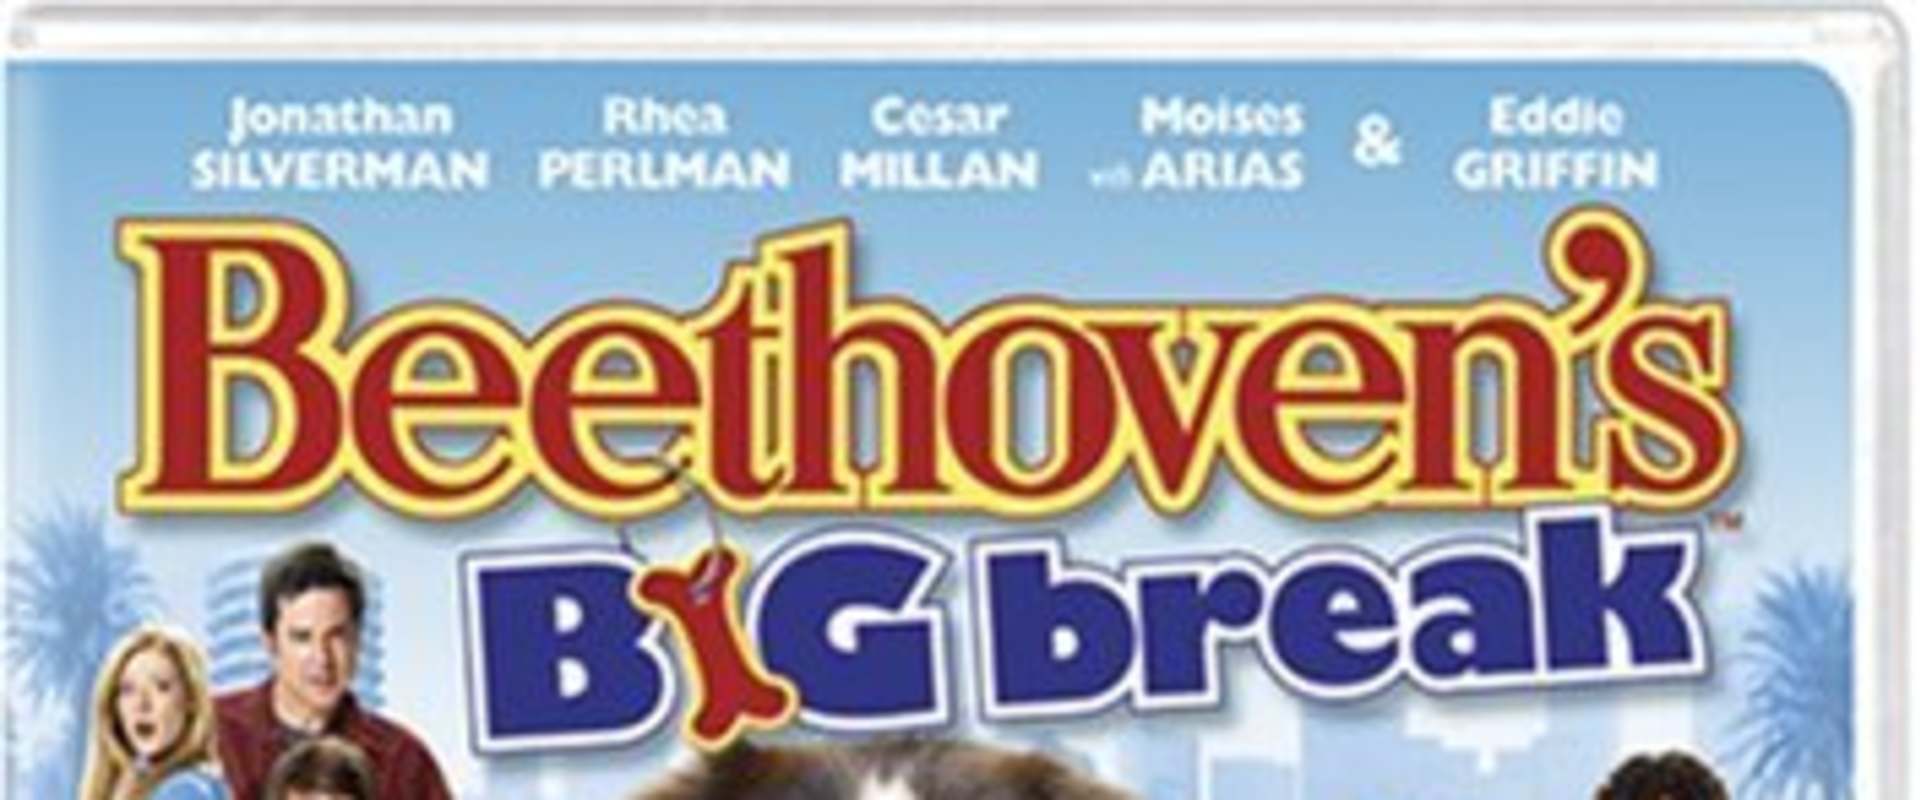 Beethoven's Big Break background 1